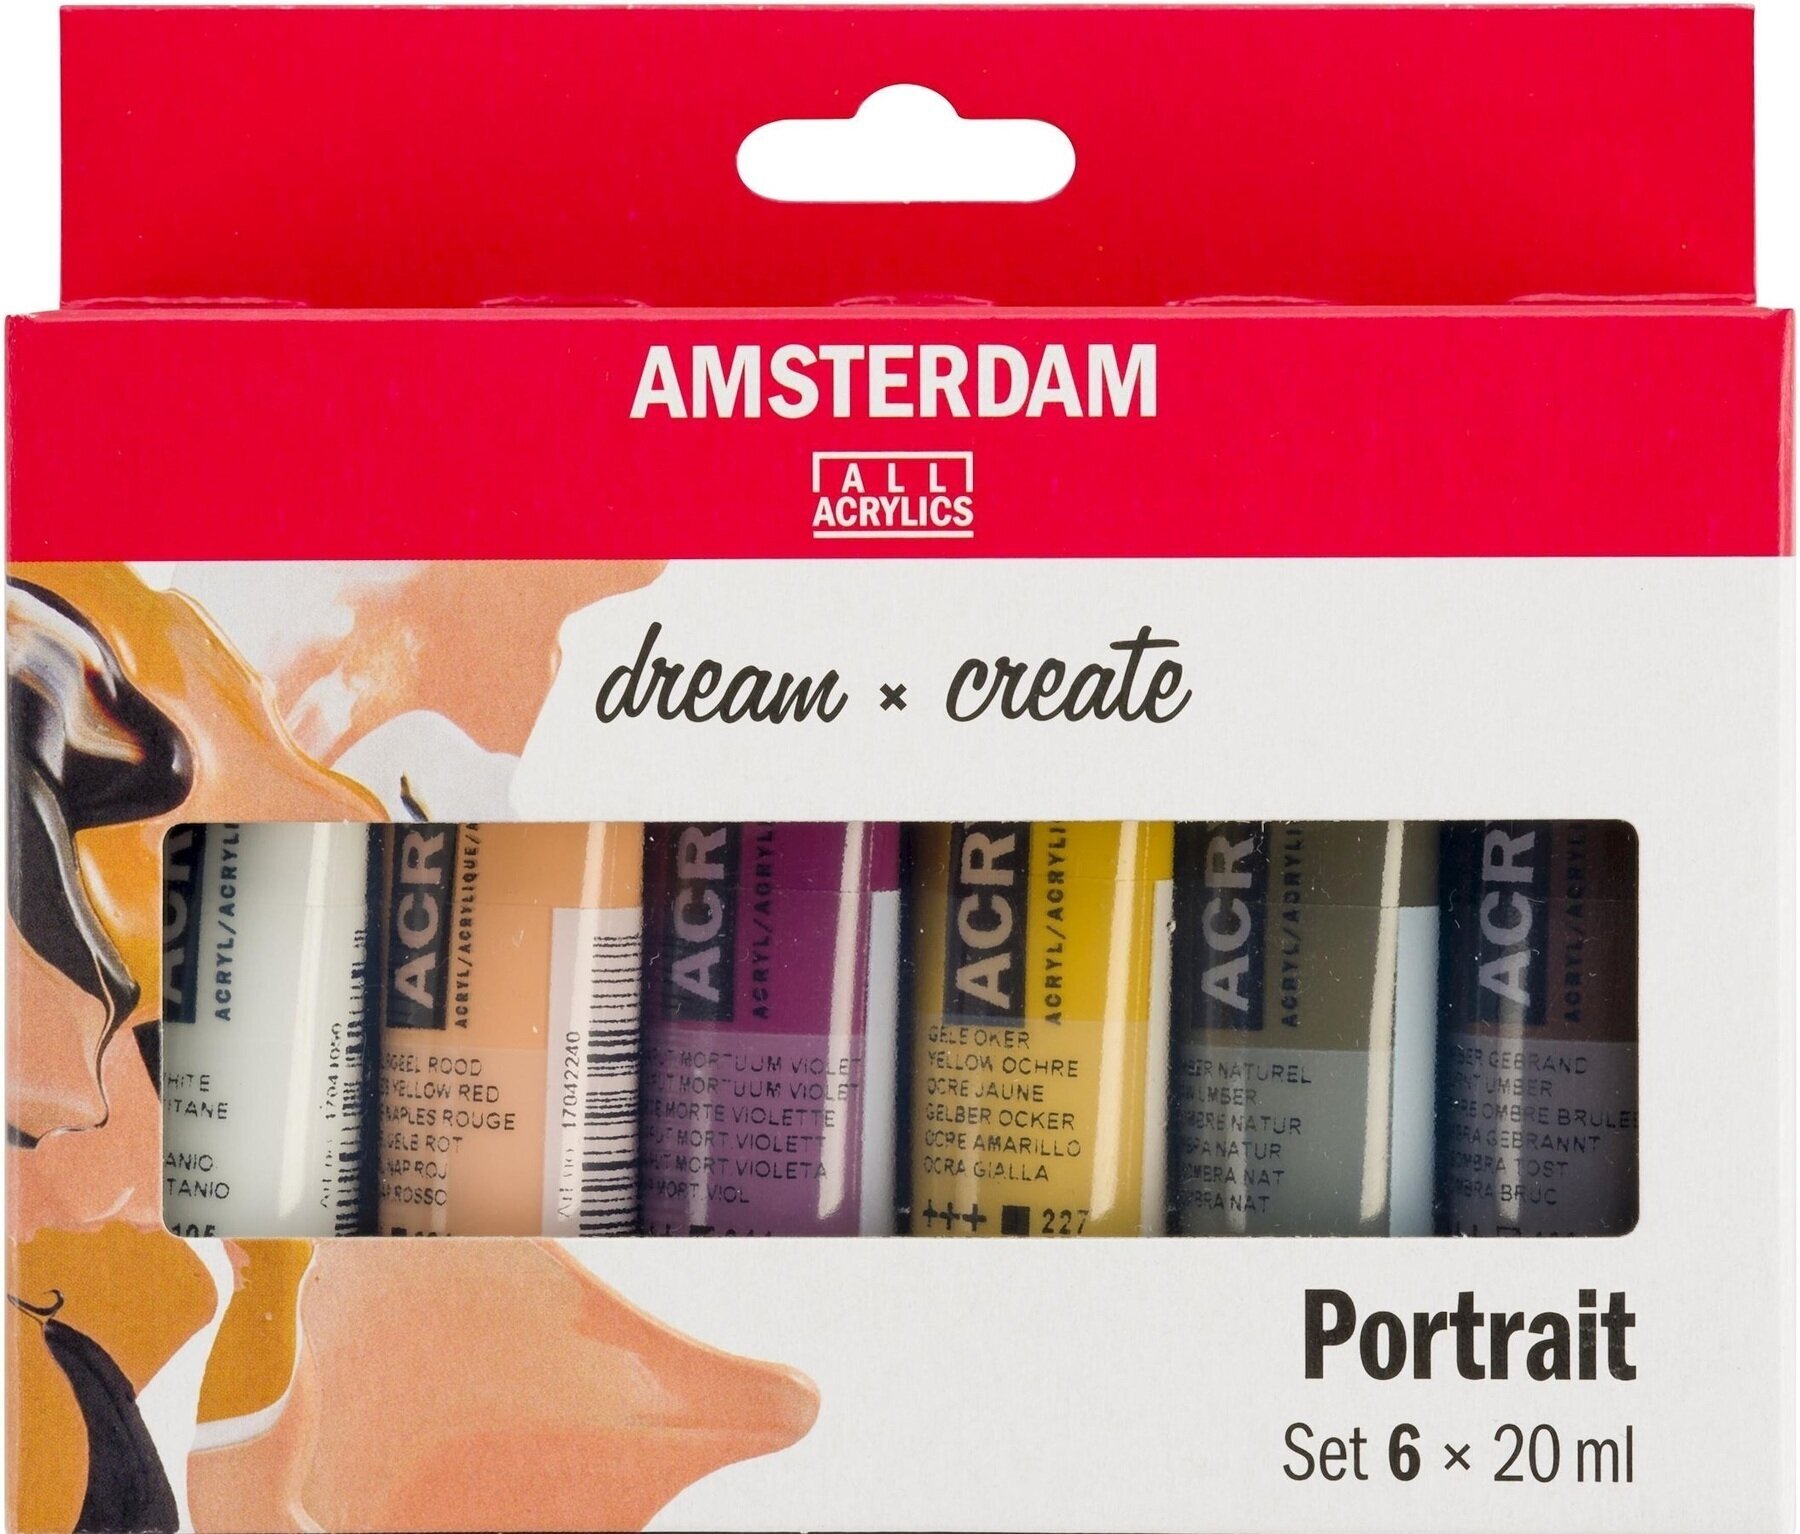 Acrylic Paint Amsterdam Set of Acrylic Paints 6 x 20 ml Portrait Colors